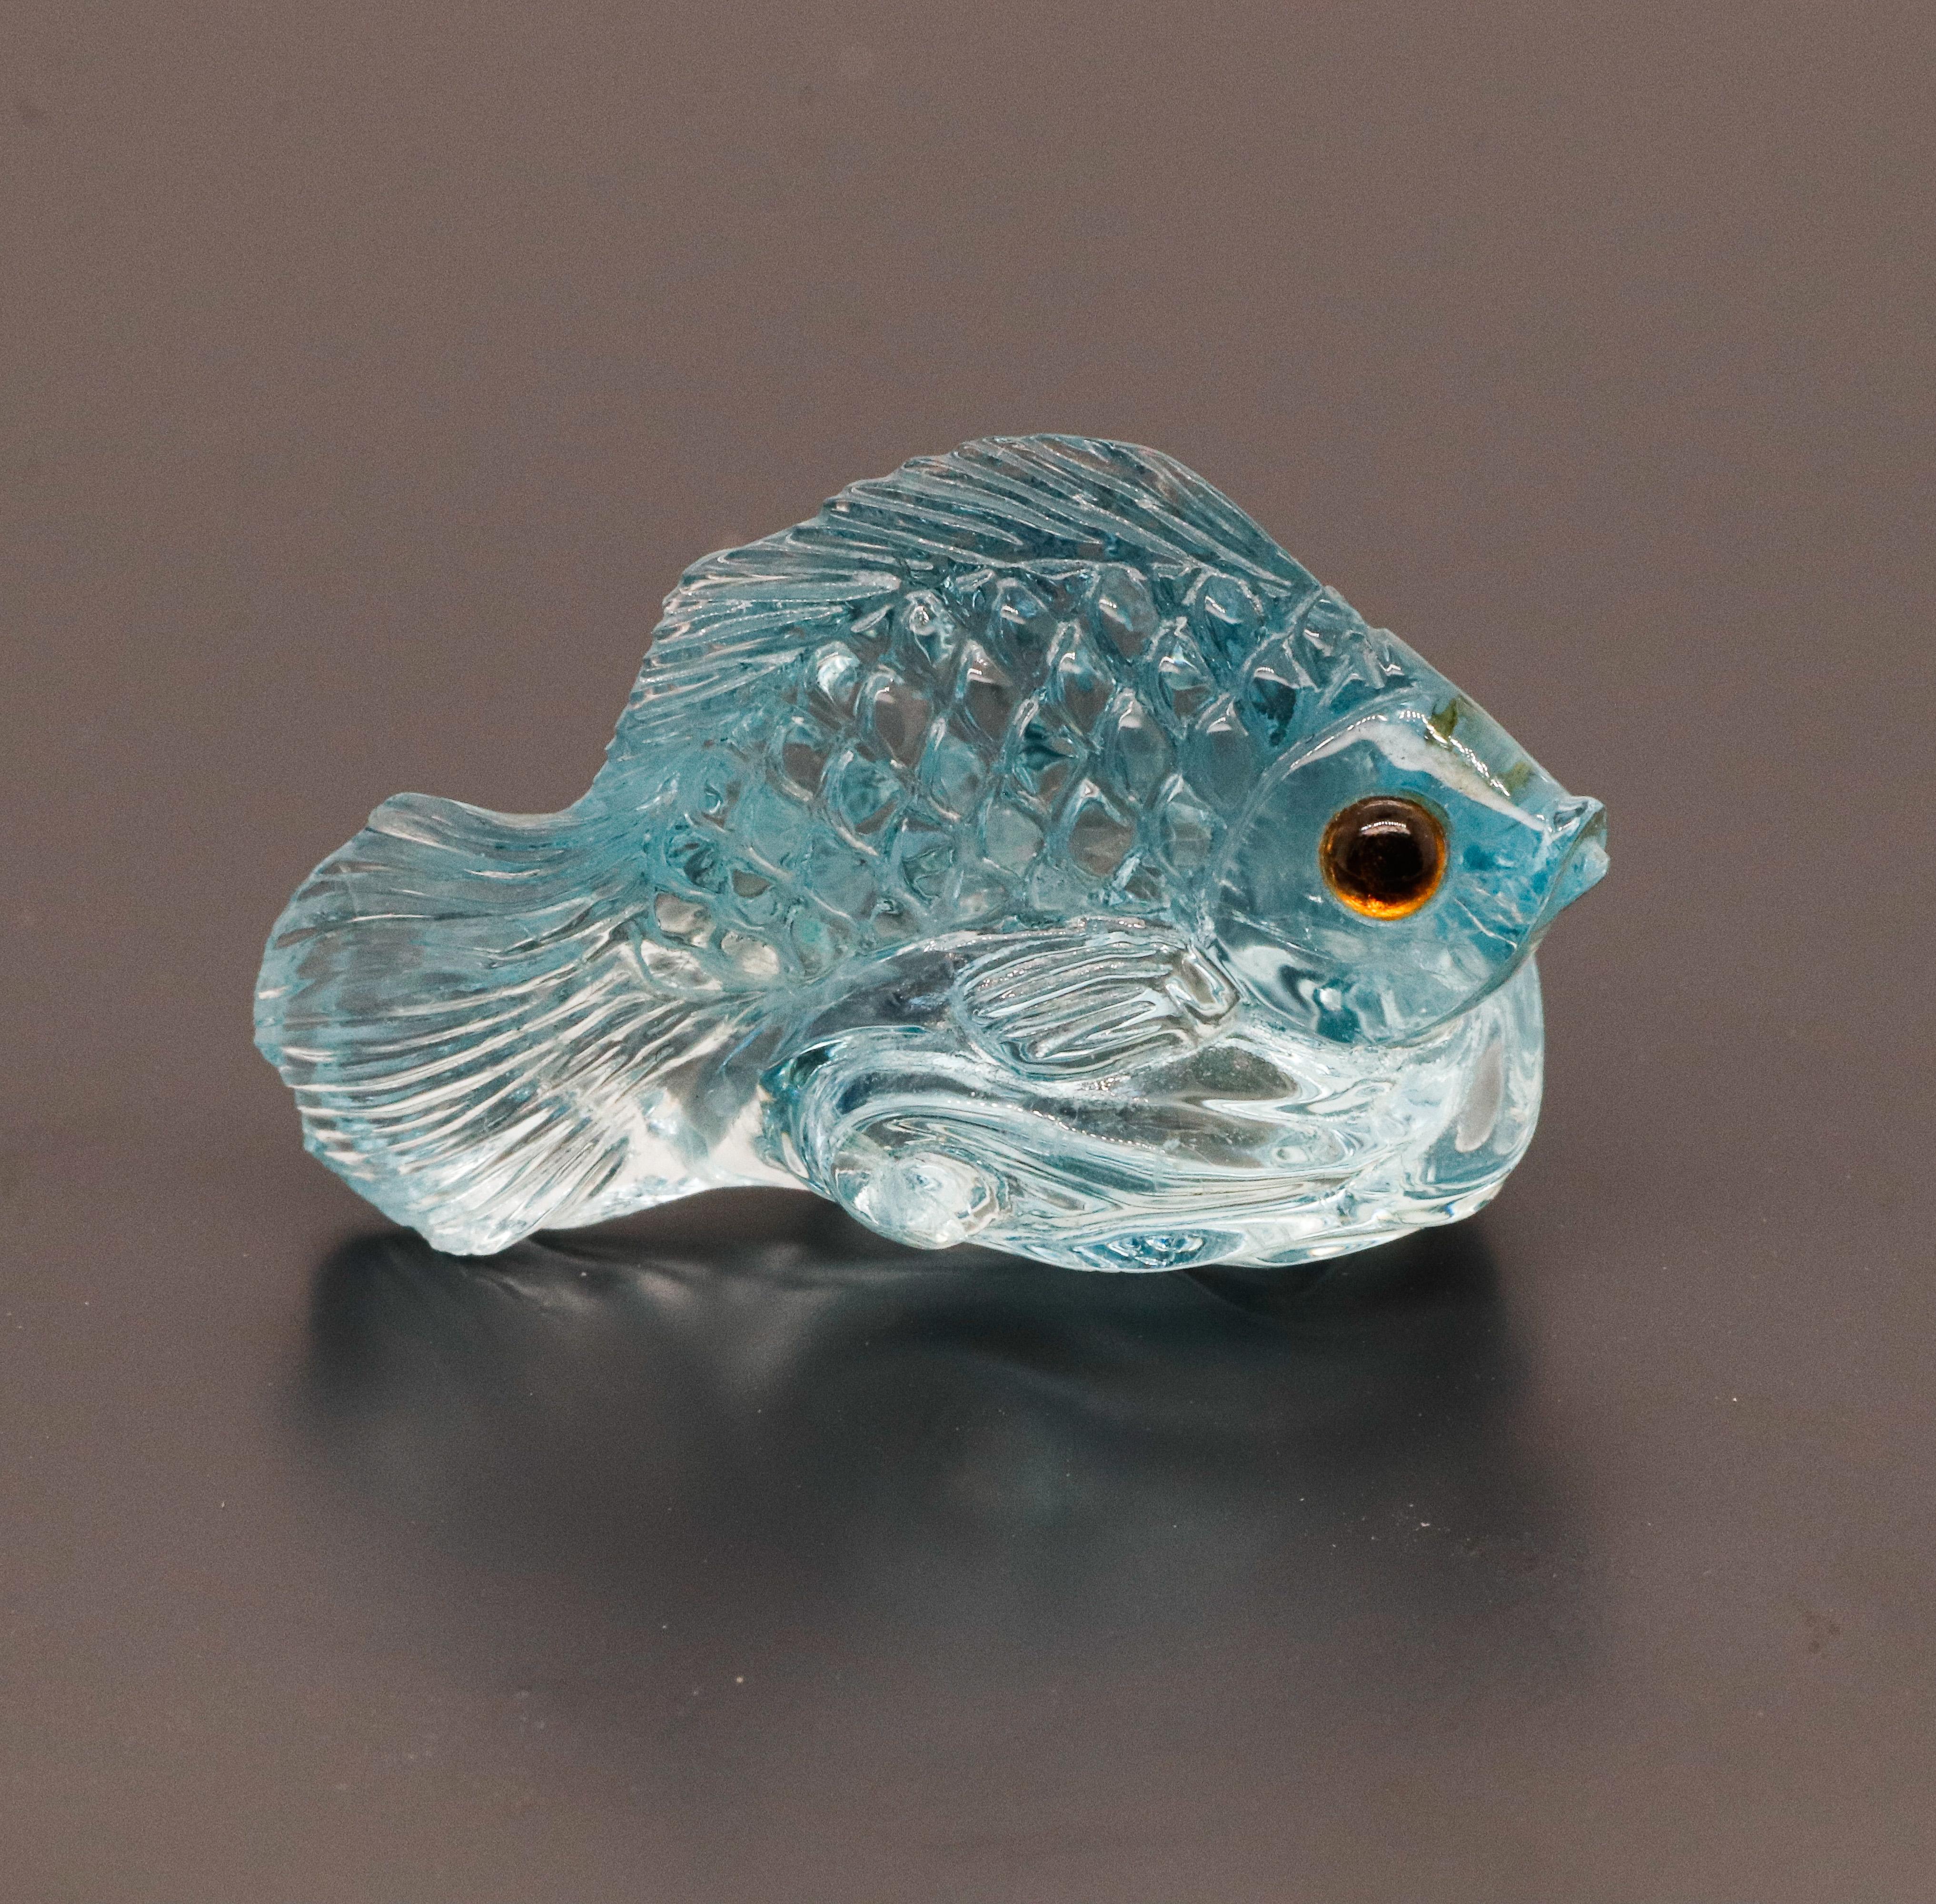 Der Aquamarin ist ein leuchtend blauer Edelstein, der die Blicke auf sich zieht. Dieser attraktive perlblaue Stein wurde Jahrtausende lang im Mittelmeerraum verwendet und war ein wichtiger Siegelringstein für die alten Römer und den französischen